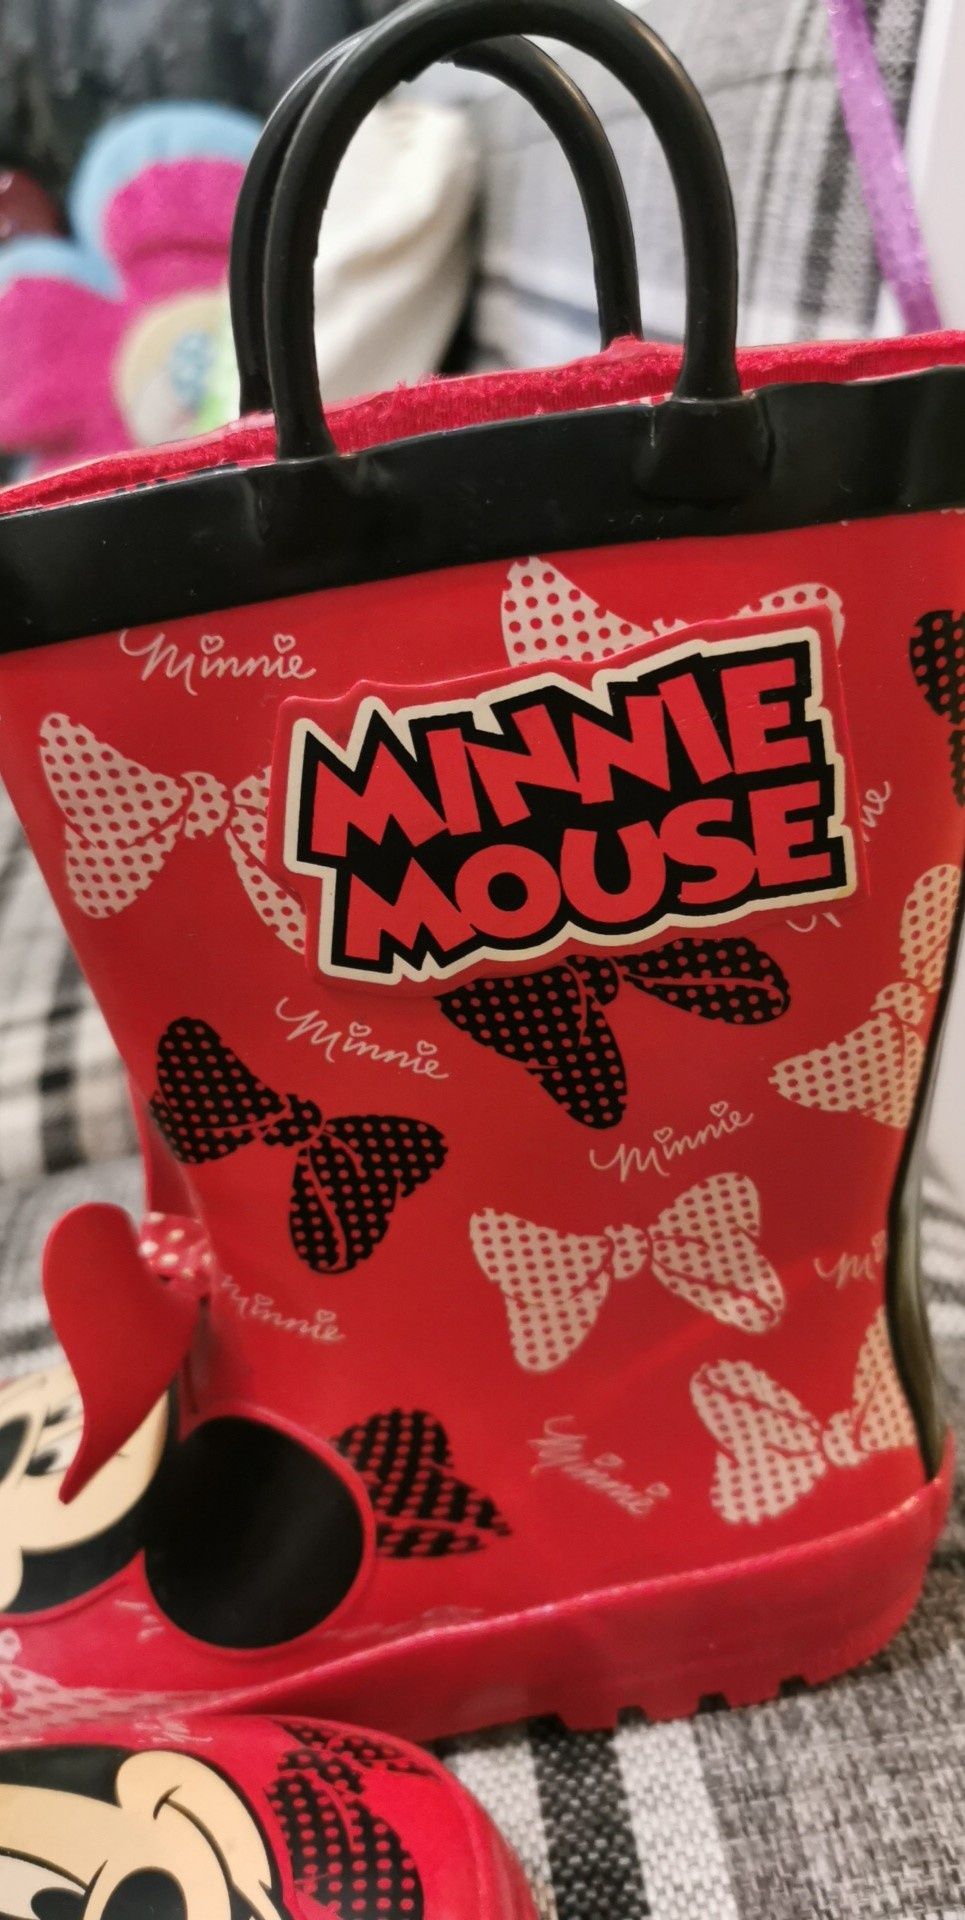 Cizme /Minnie Mouse